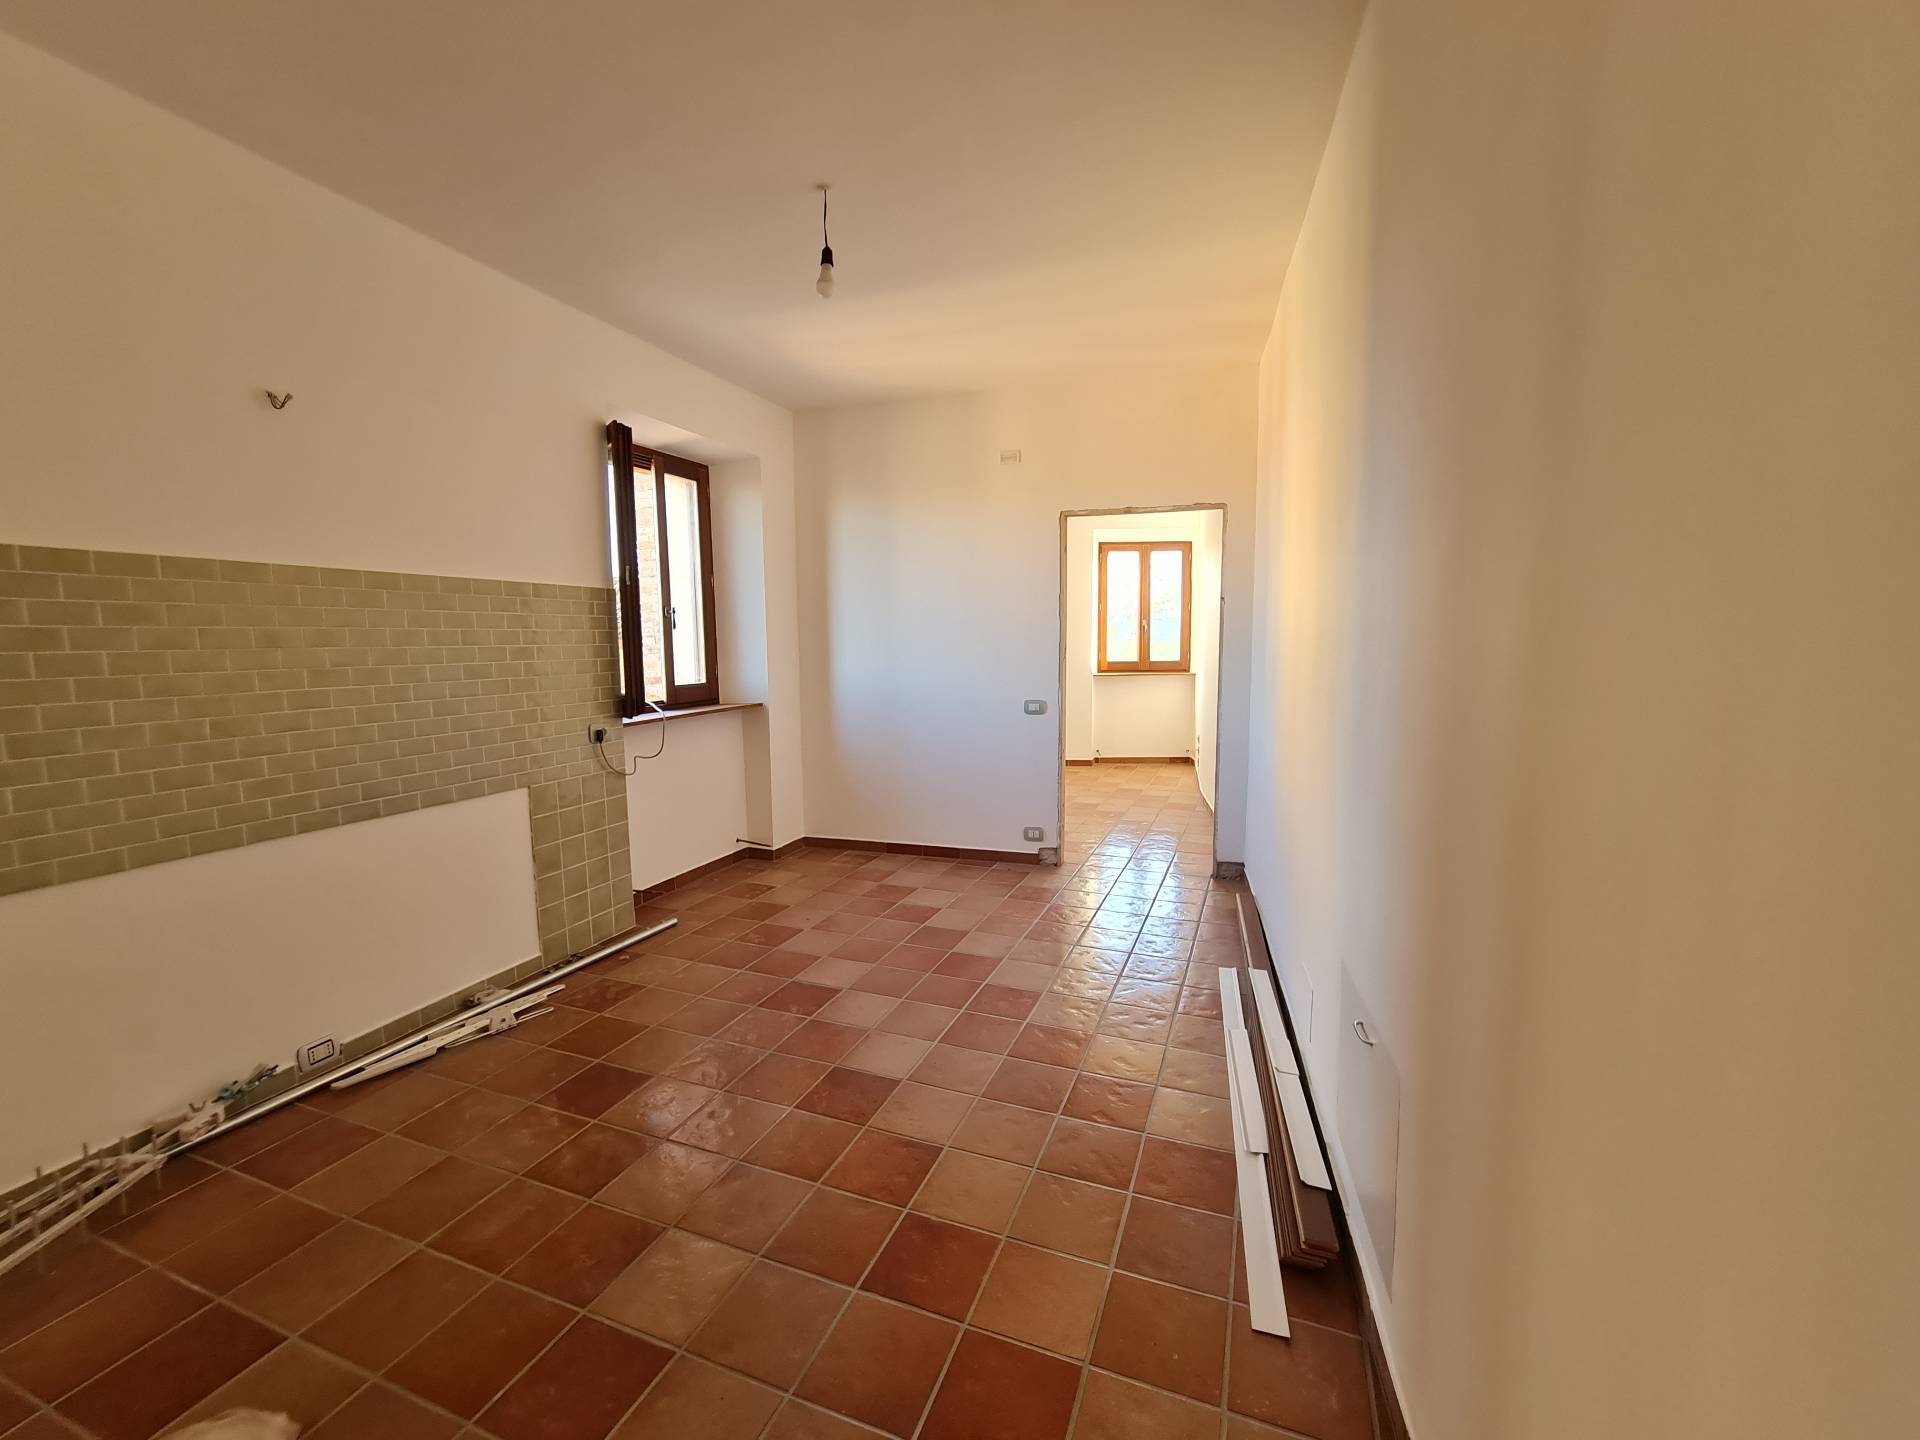 Apartment in Francavilla d'Ete (Fermo)